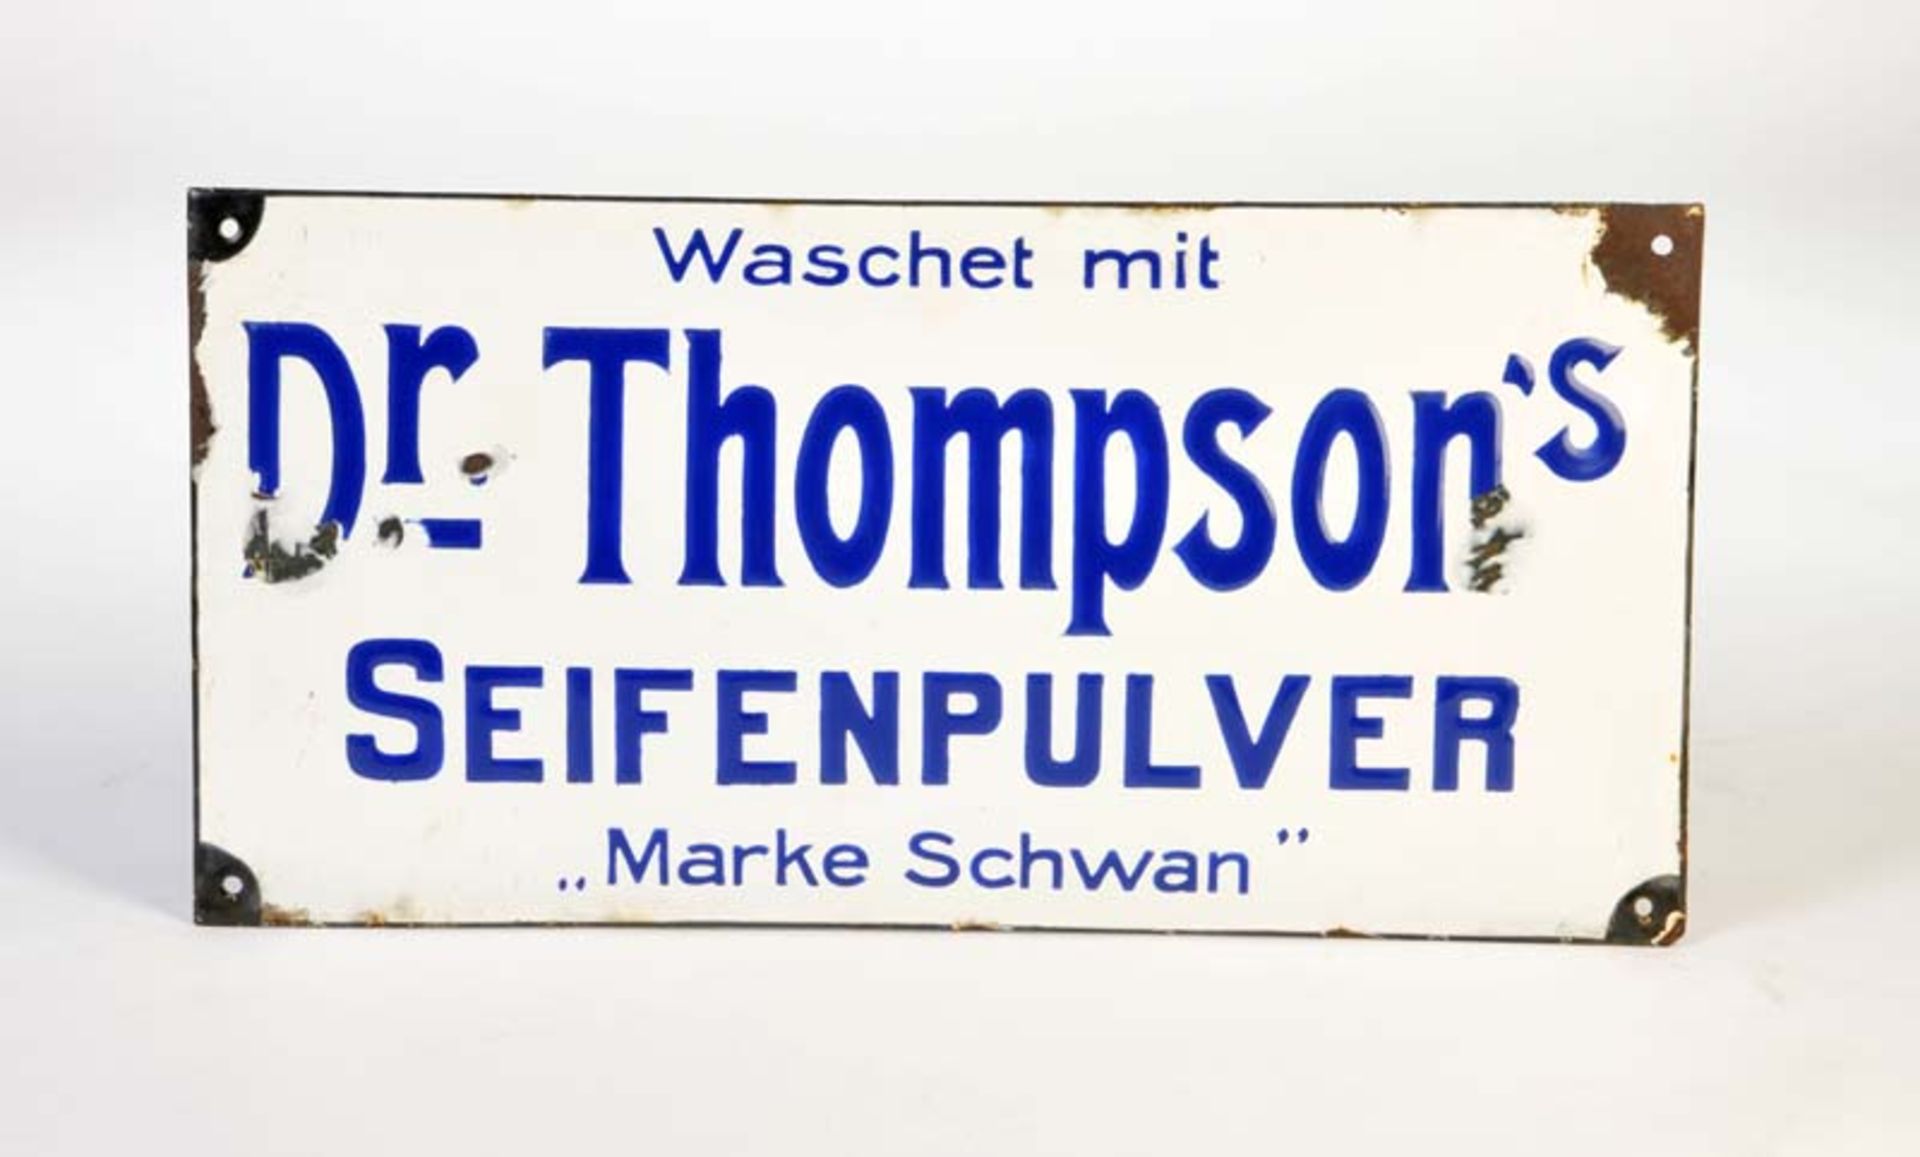 Emailleschild "Dr. Thompson'sSeifenpulver", 25x50 cm, LM an den Rändersn, kleine Abplatzer, Z 2-